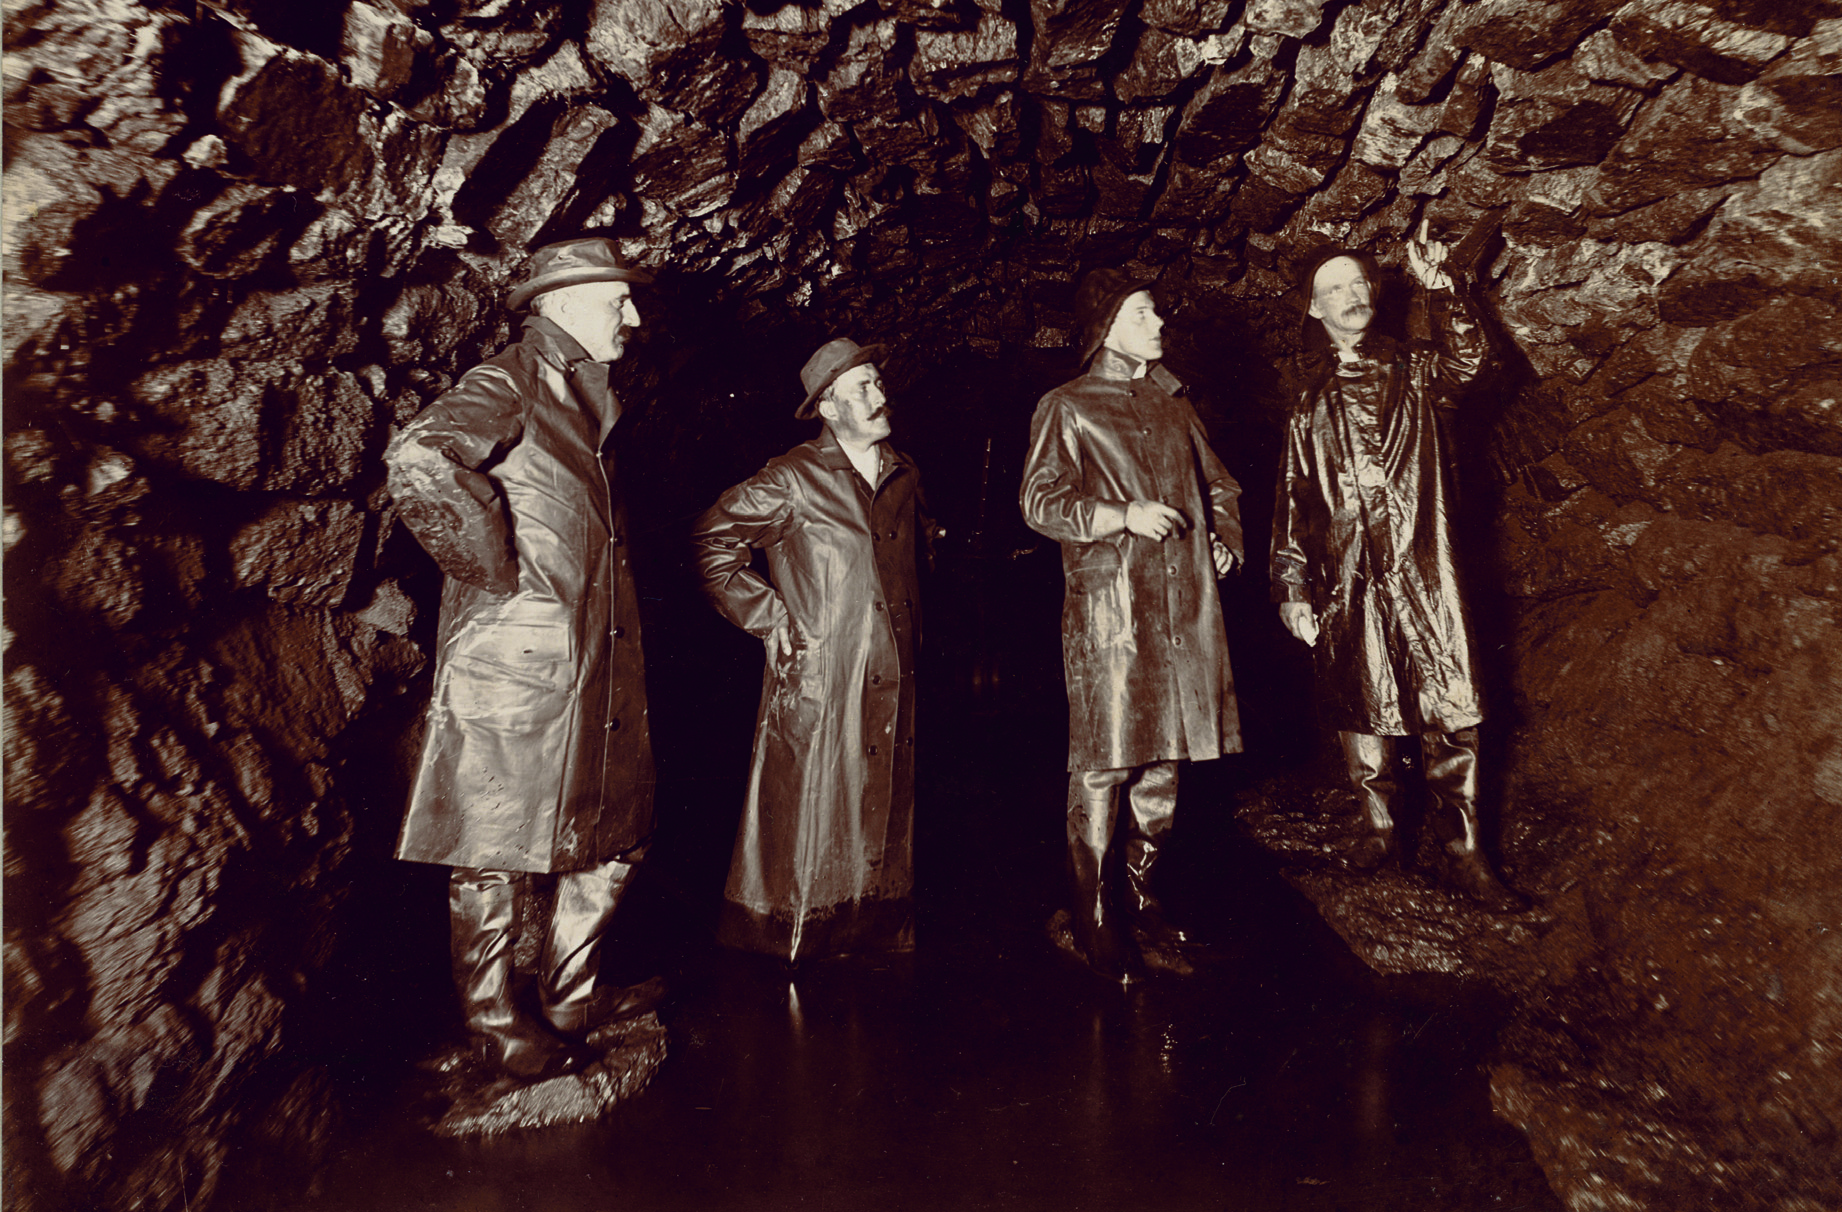 Men examining sewer stone work